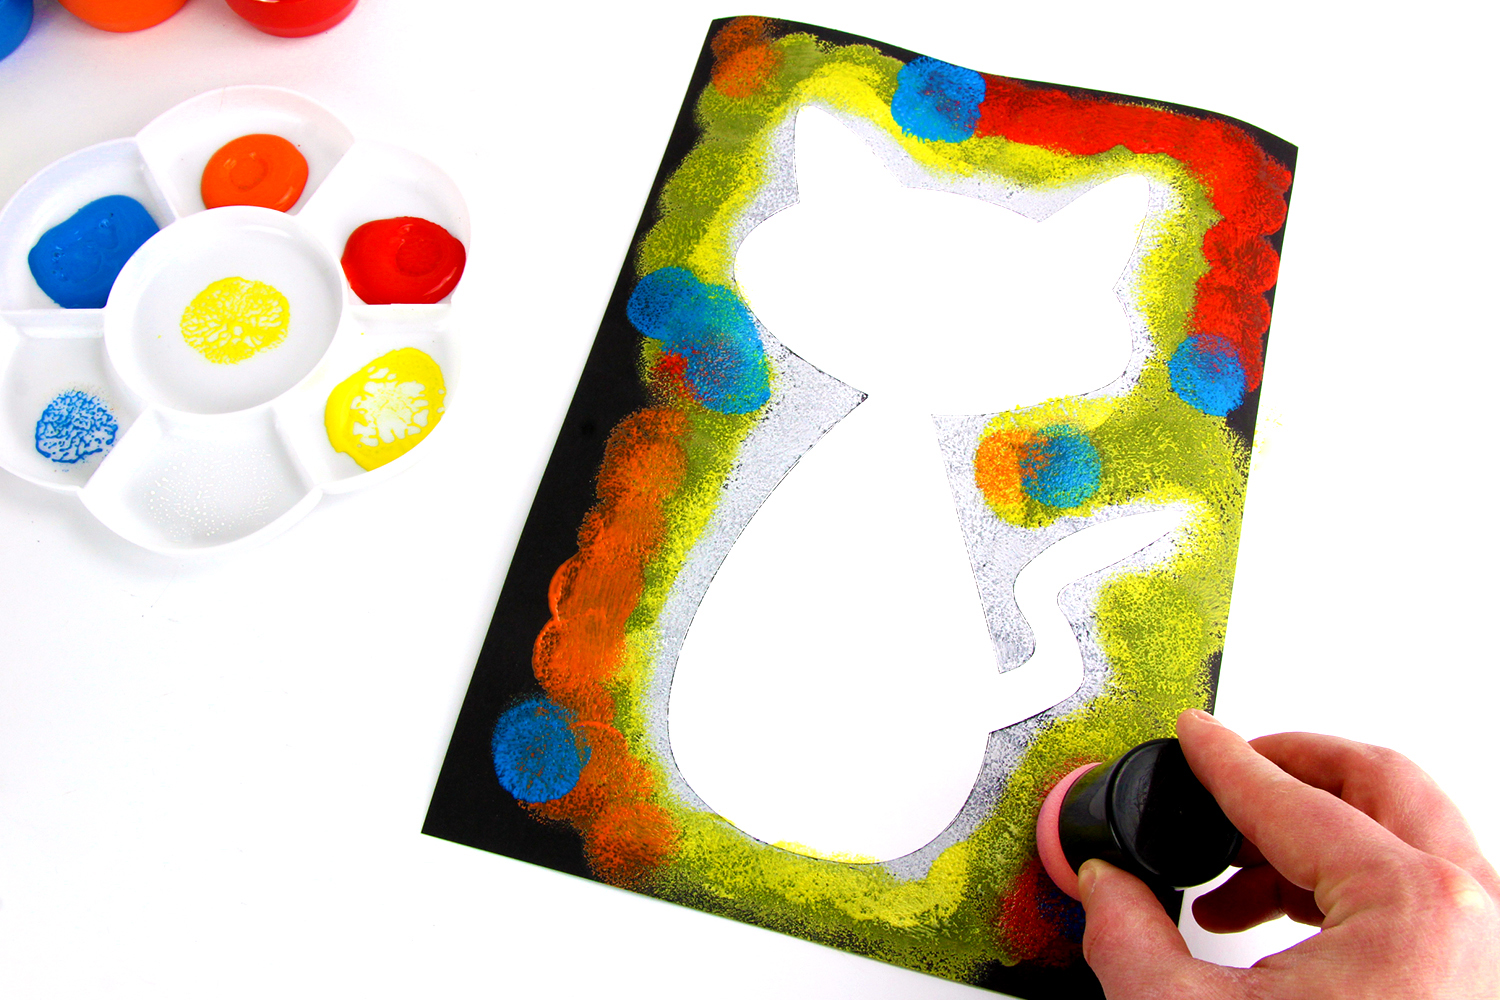 Brosse éponge Couleur éducative pour enfants Pinceau en plastique avec  outils de peinture de lavage de stylo